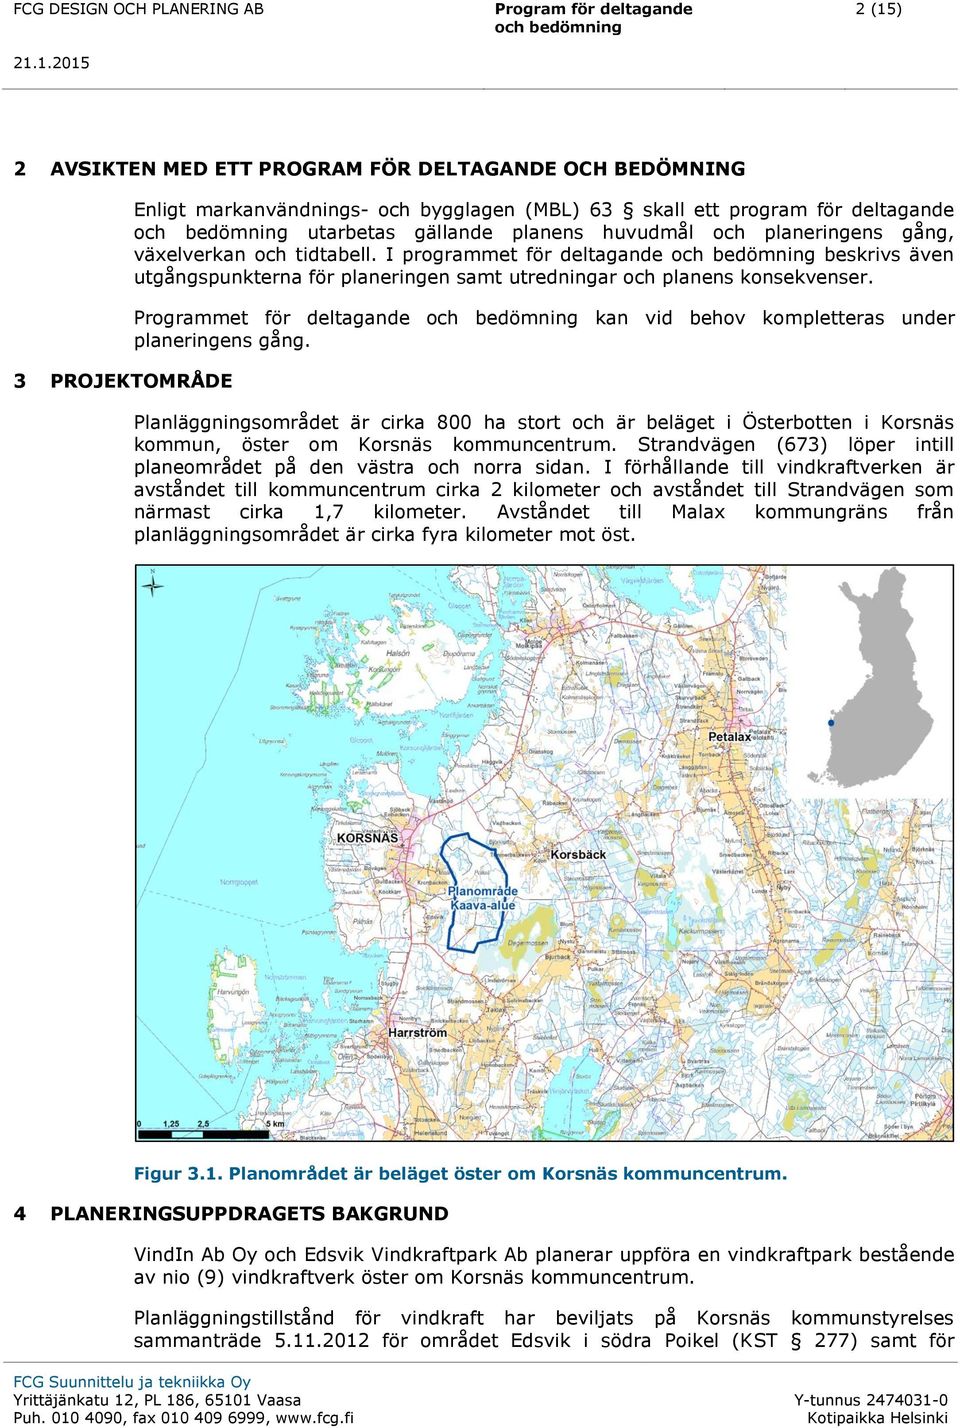 Programmet för deltagande kan vid behov kompletteras under planeringens gång. Planläggningsområdet är cirka 800 ha stort och är beläget i Österbotten i Korsnäs kommun, öster om Korsnäs kommuncentrum.